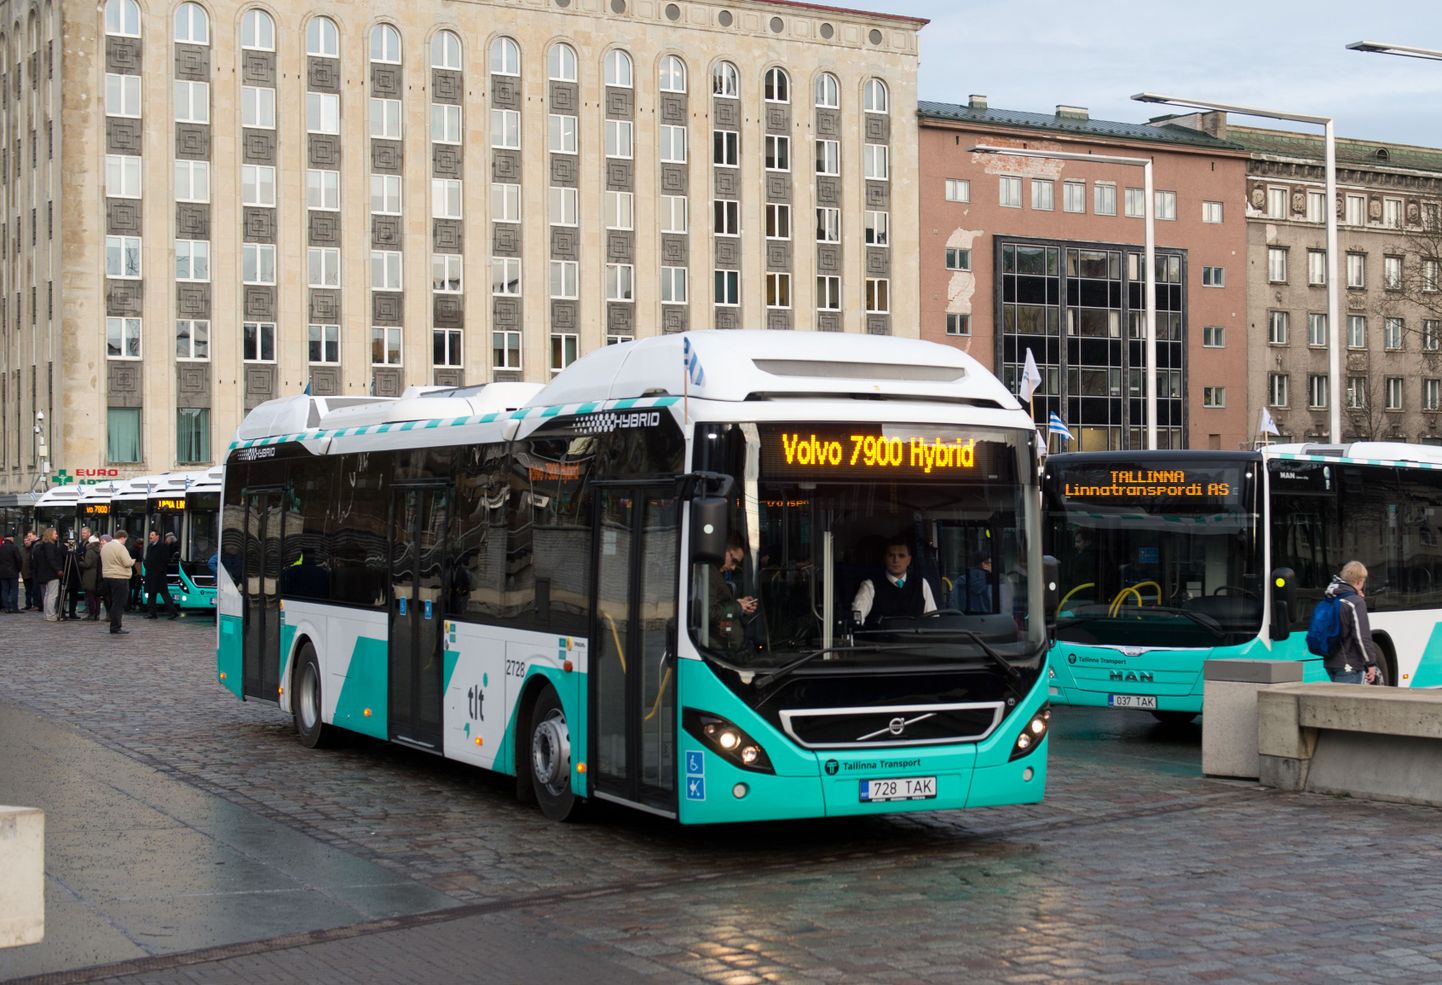 Tallinna tasuta ühistransport meelitab naaberomavalitsustes elavad inimesed pealinna elanikeregistrisse.